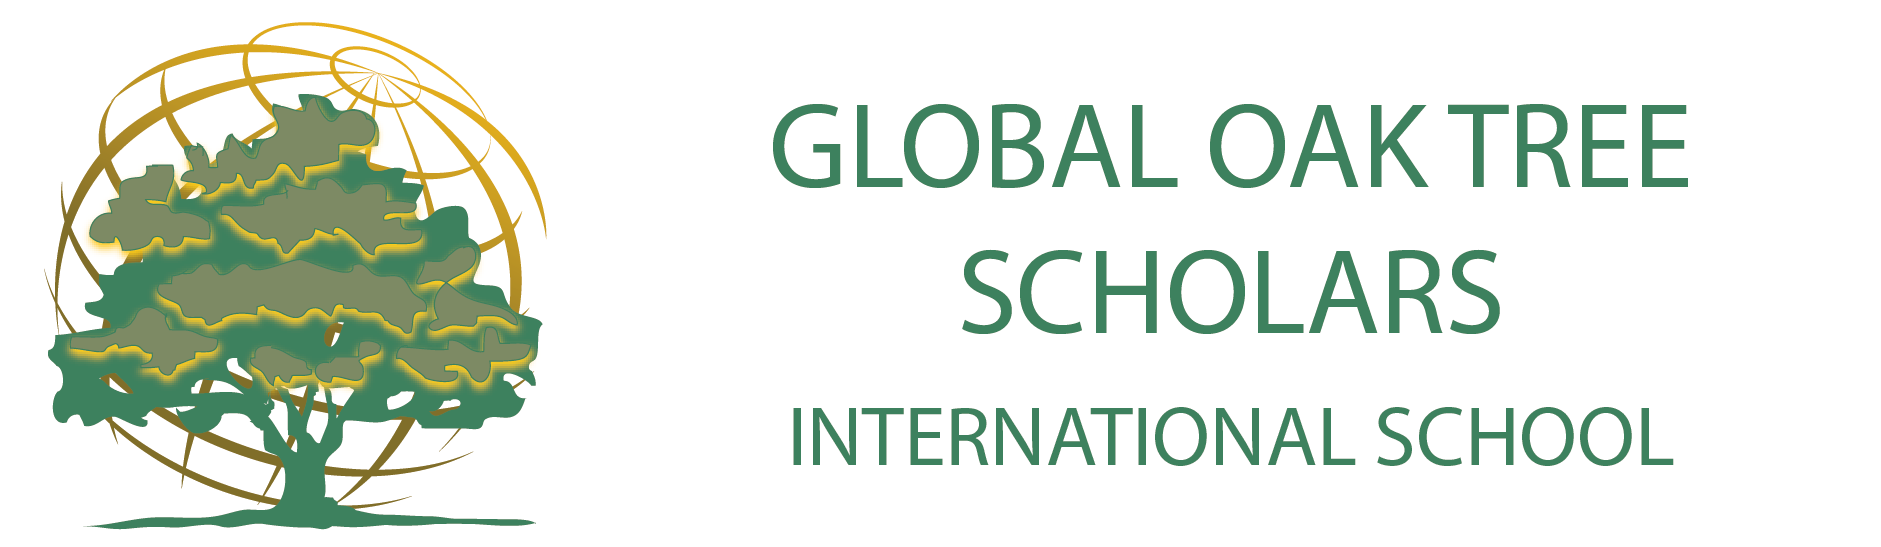 Global Oak Tree Scholars